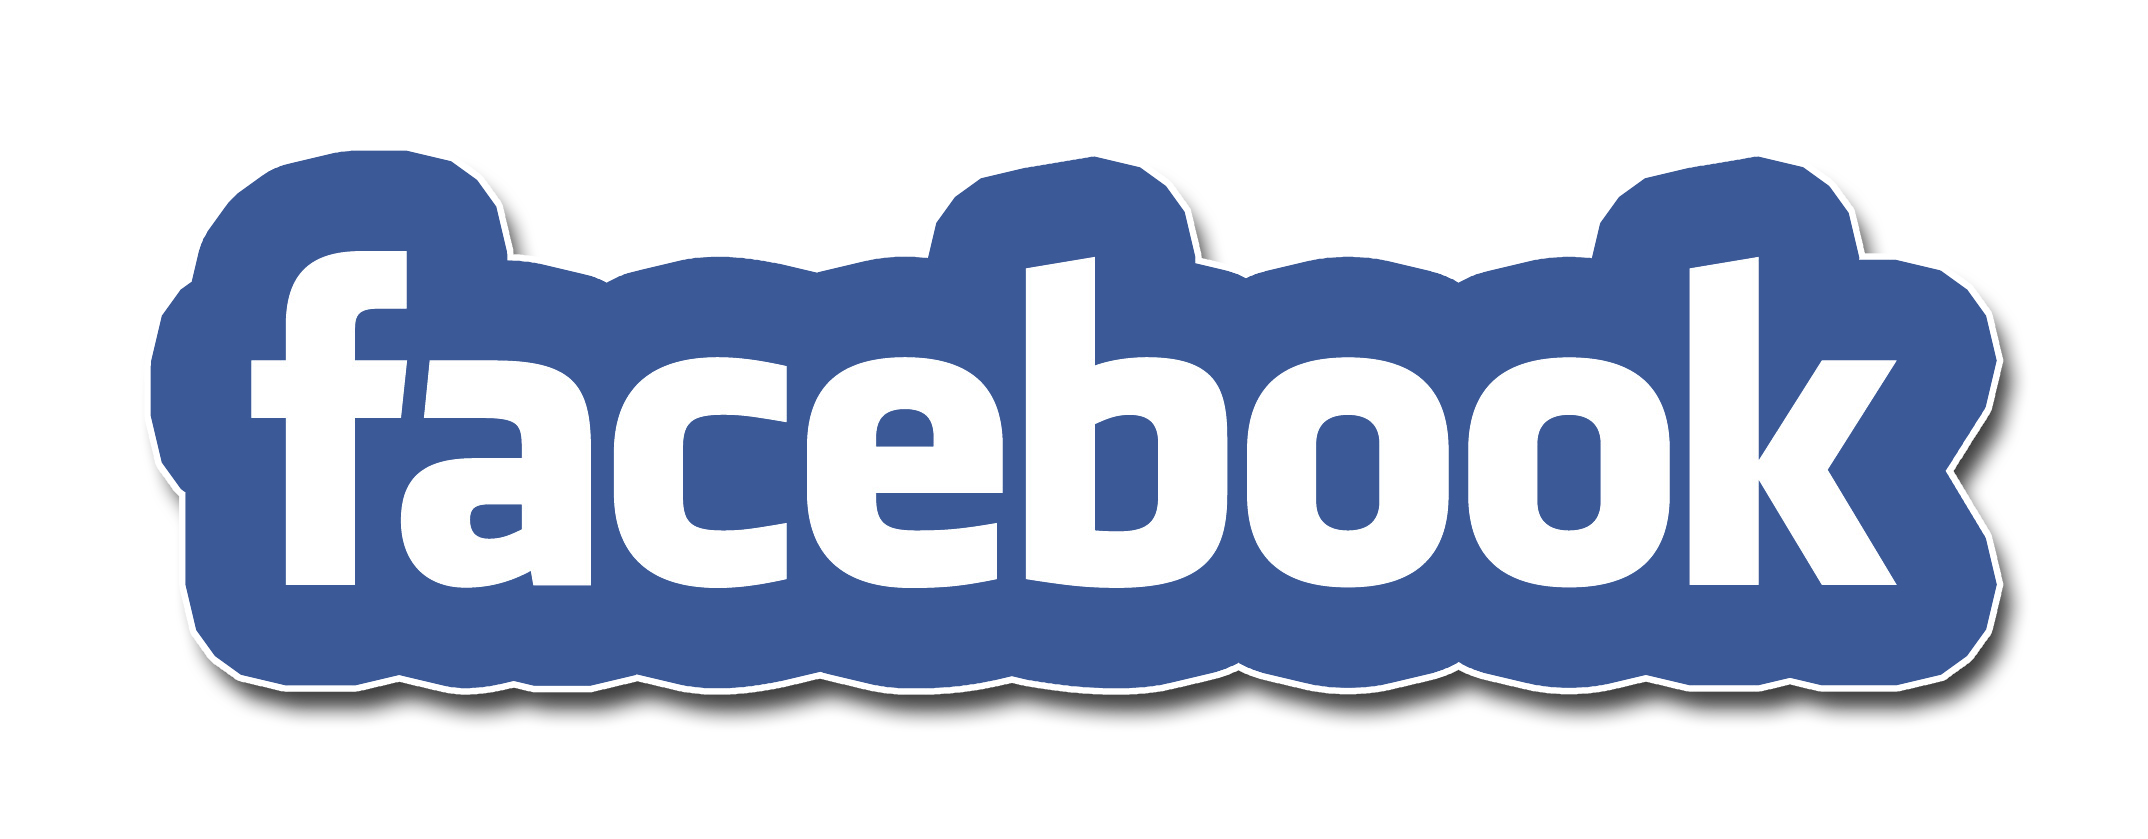 Logo Facebook PNG, Logo Facebook Transparent Background  FreeIconsPNG